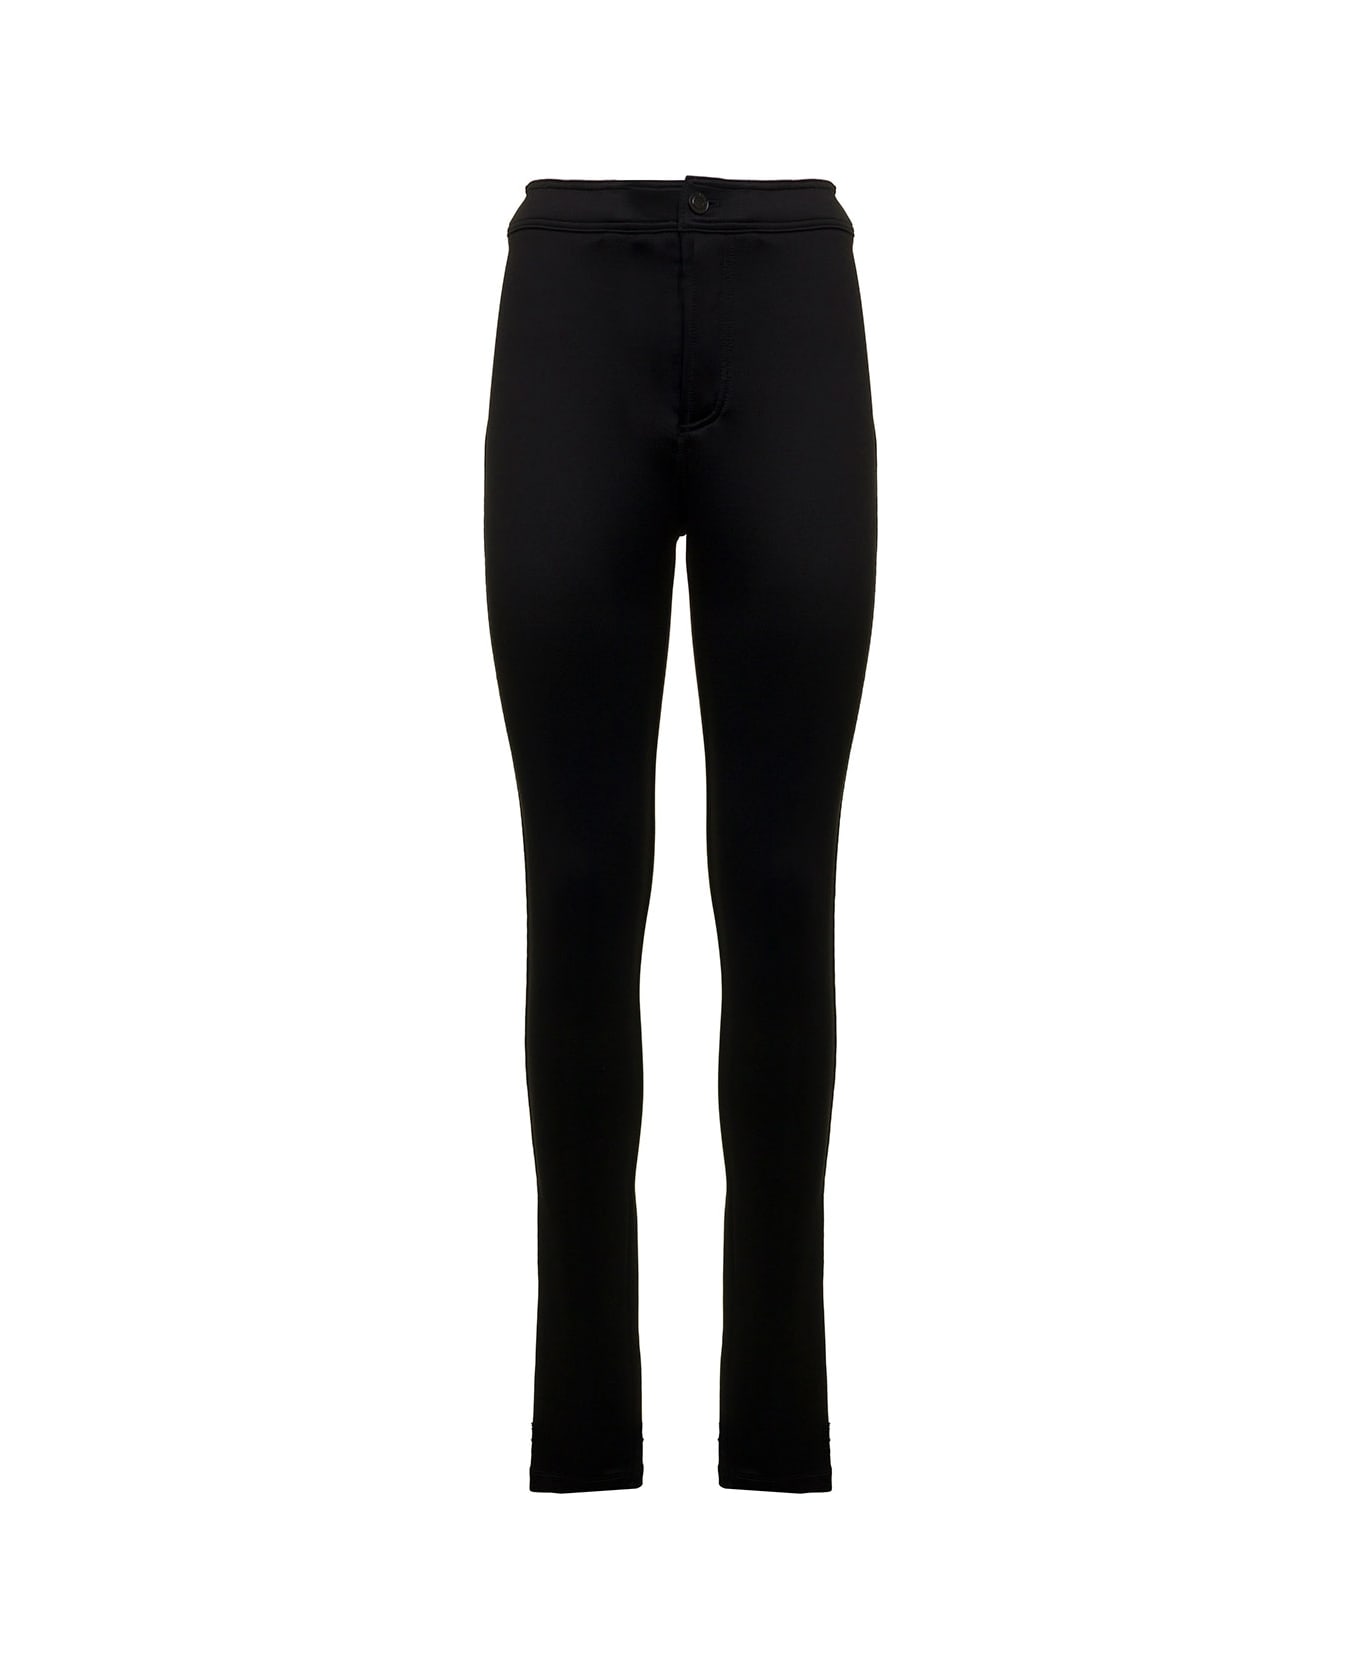 Saint Laurent Woman's Black Slim Fit Jersey Pants - Black